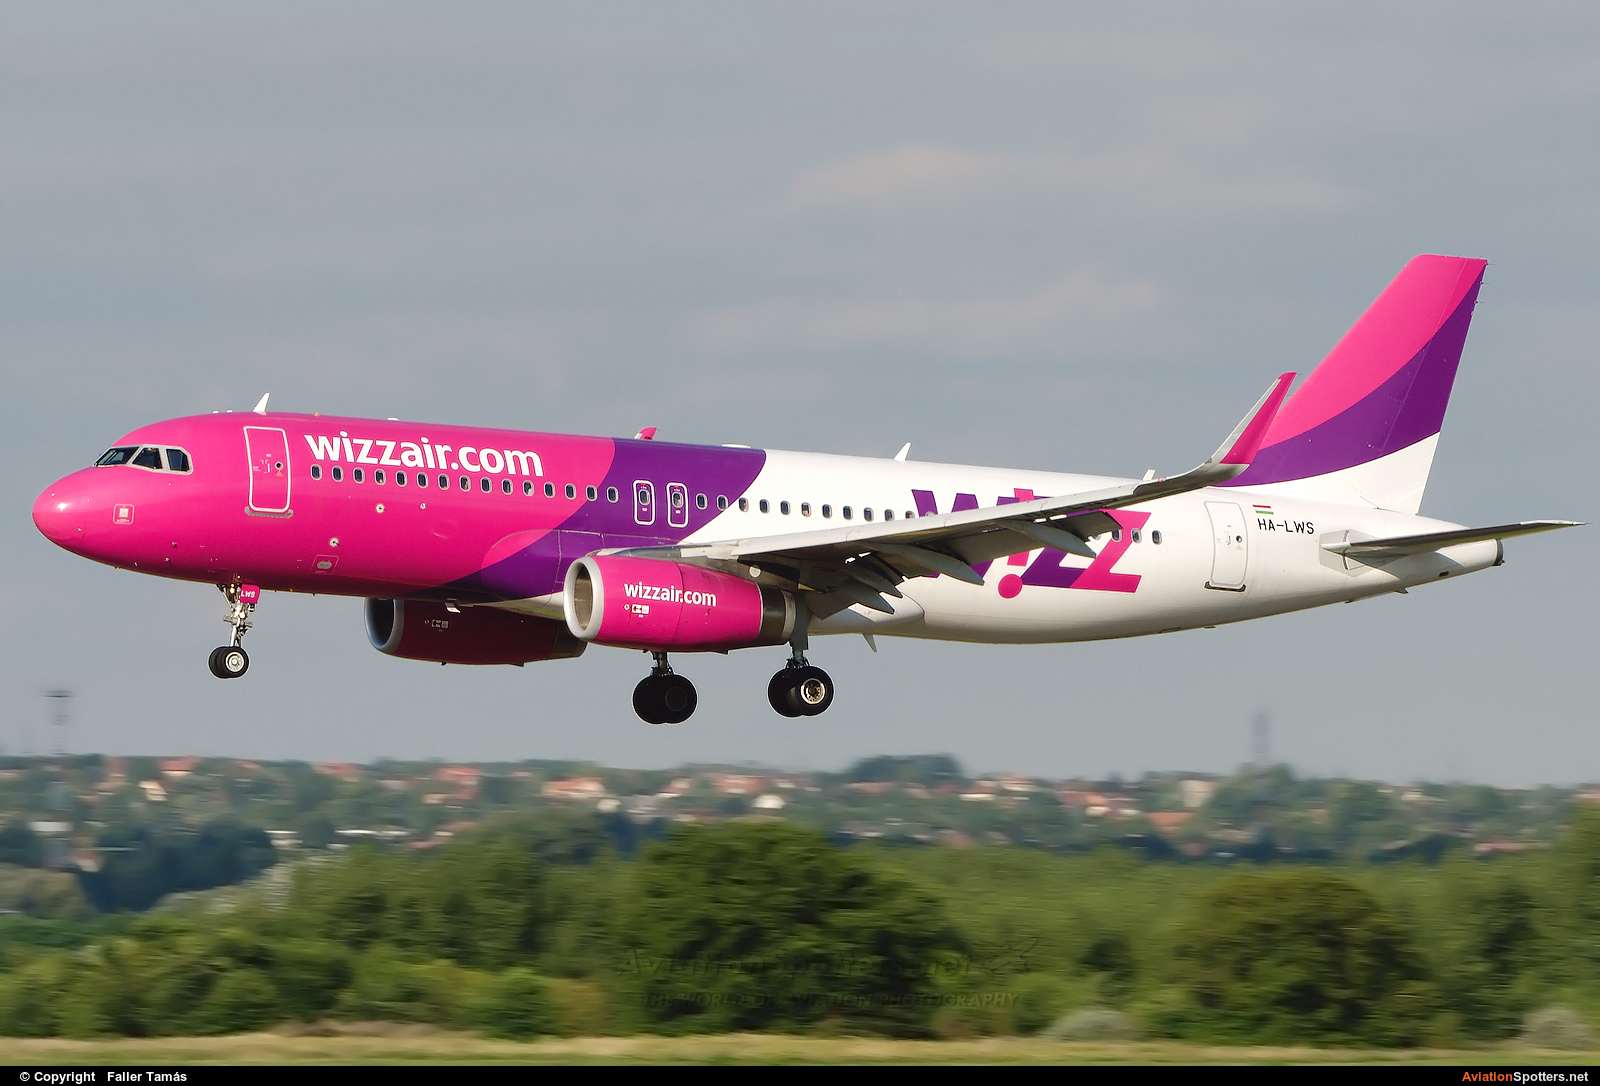 Wizz Air  -  A320  (HA-LWS) By Faller Tamás (fallto78)